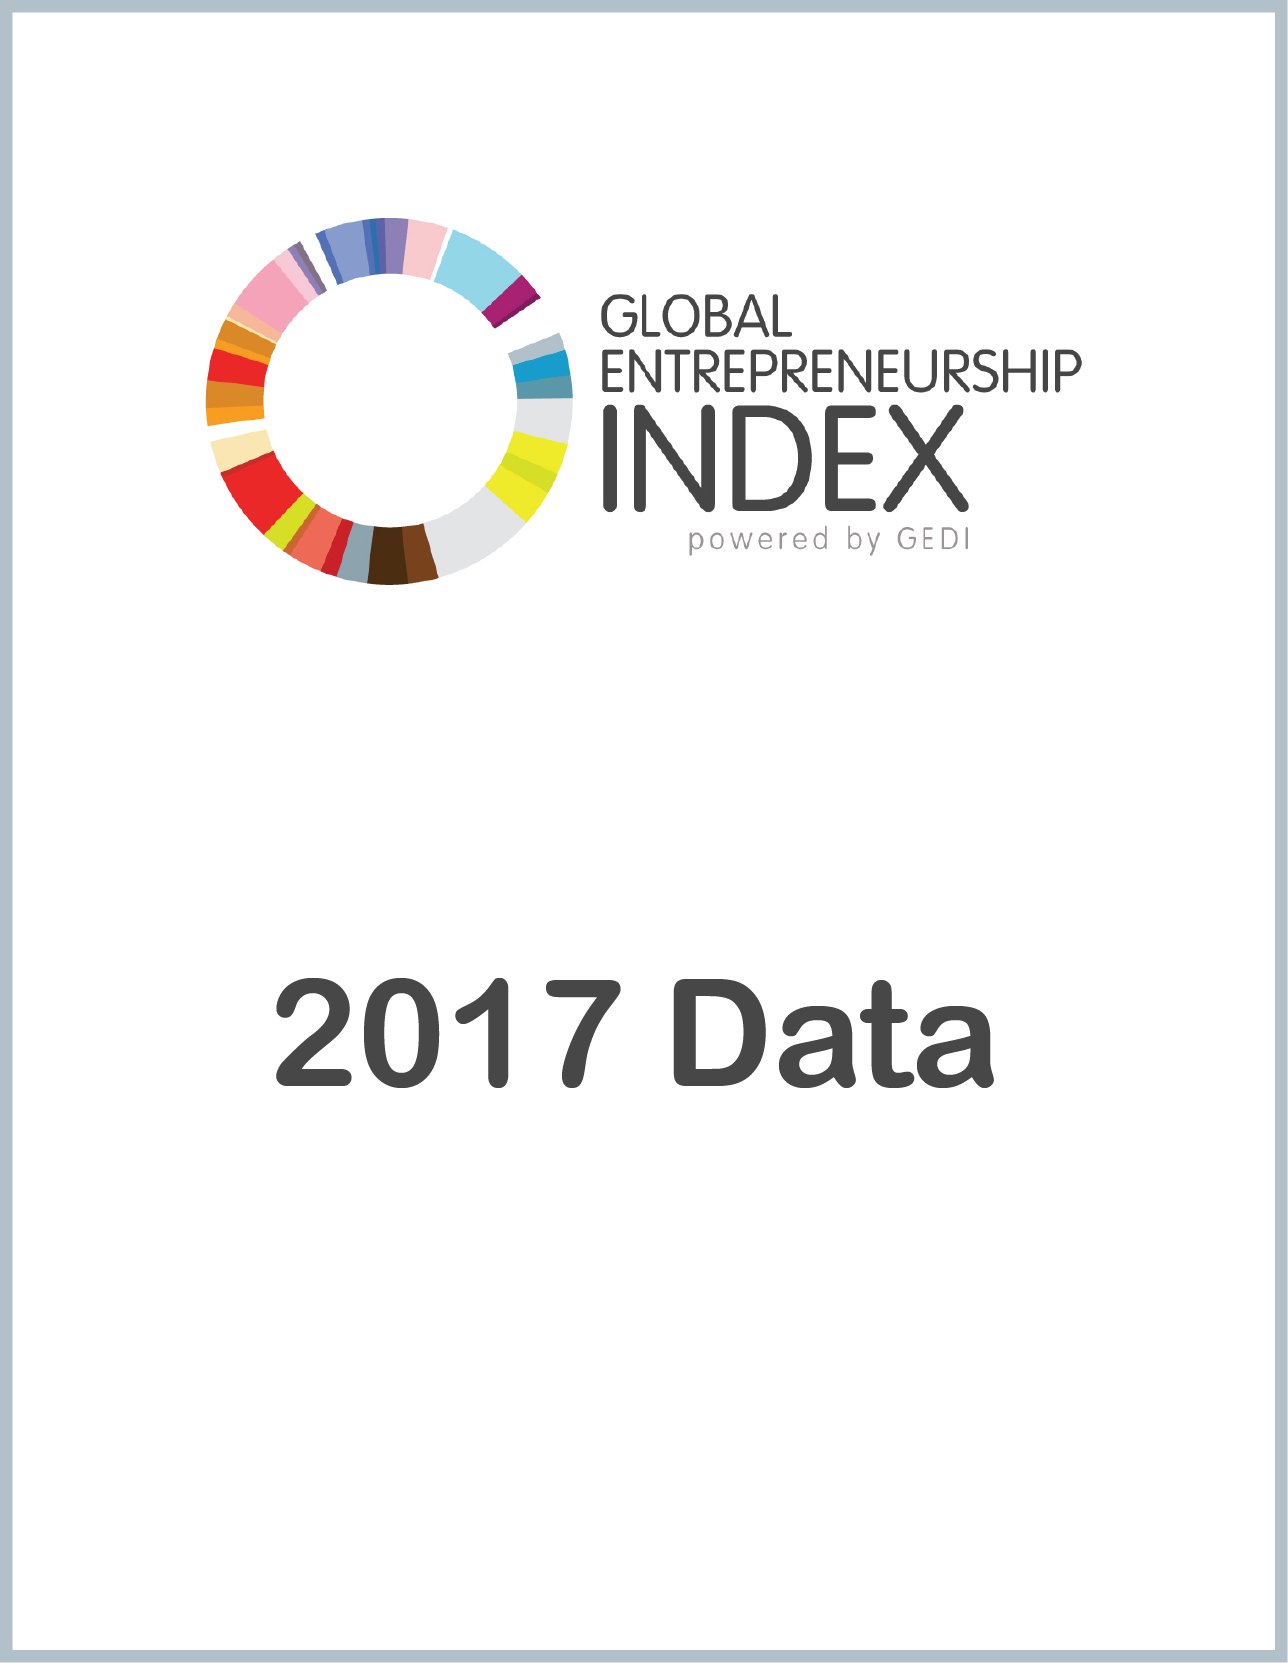 2017 Global Entrepreneurship Index Data - $10 fee